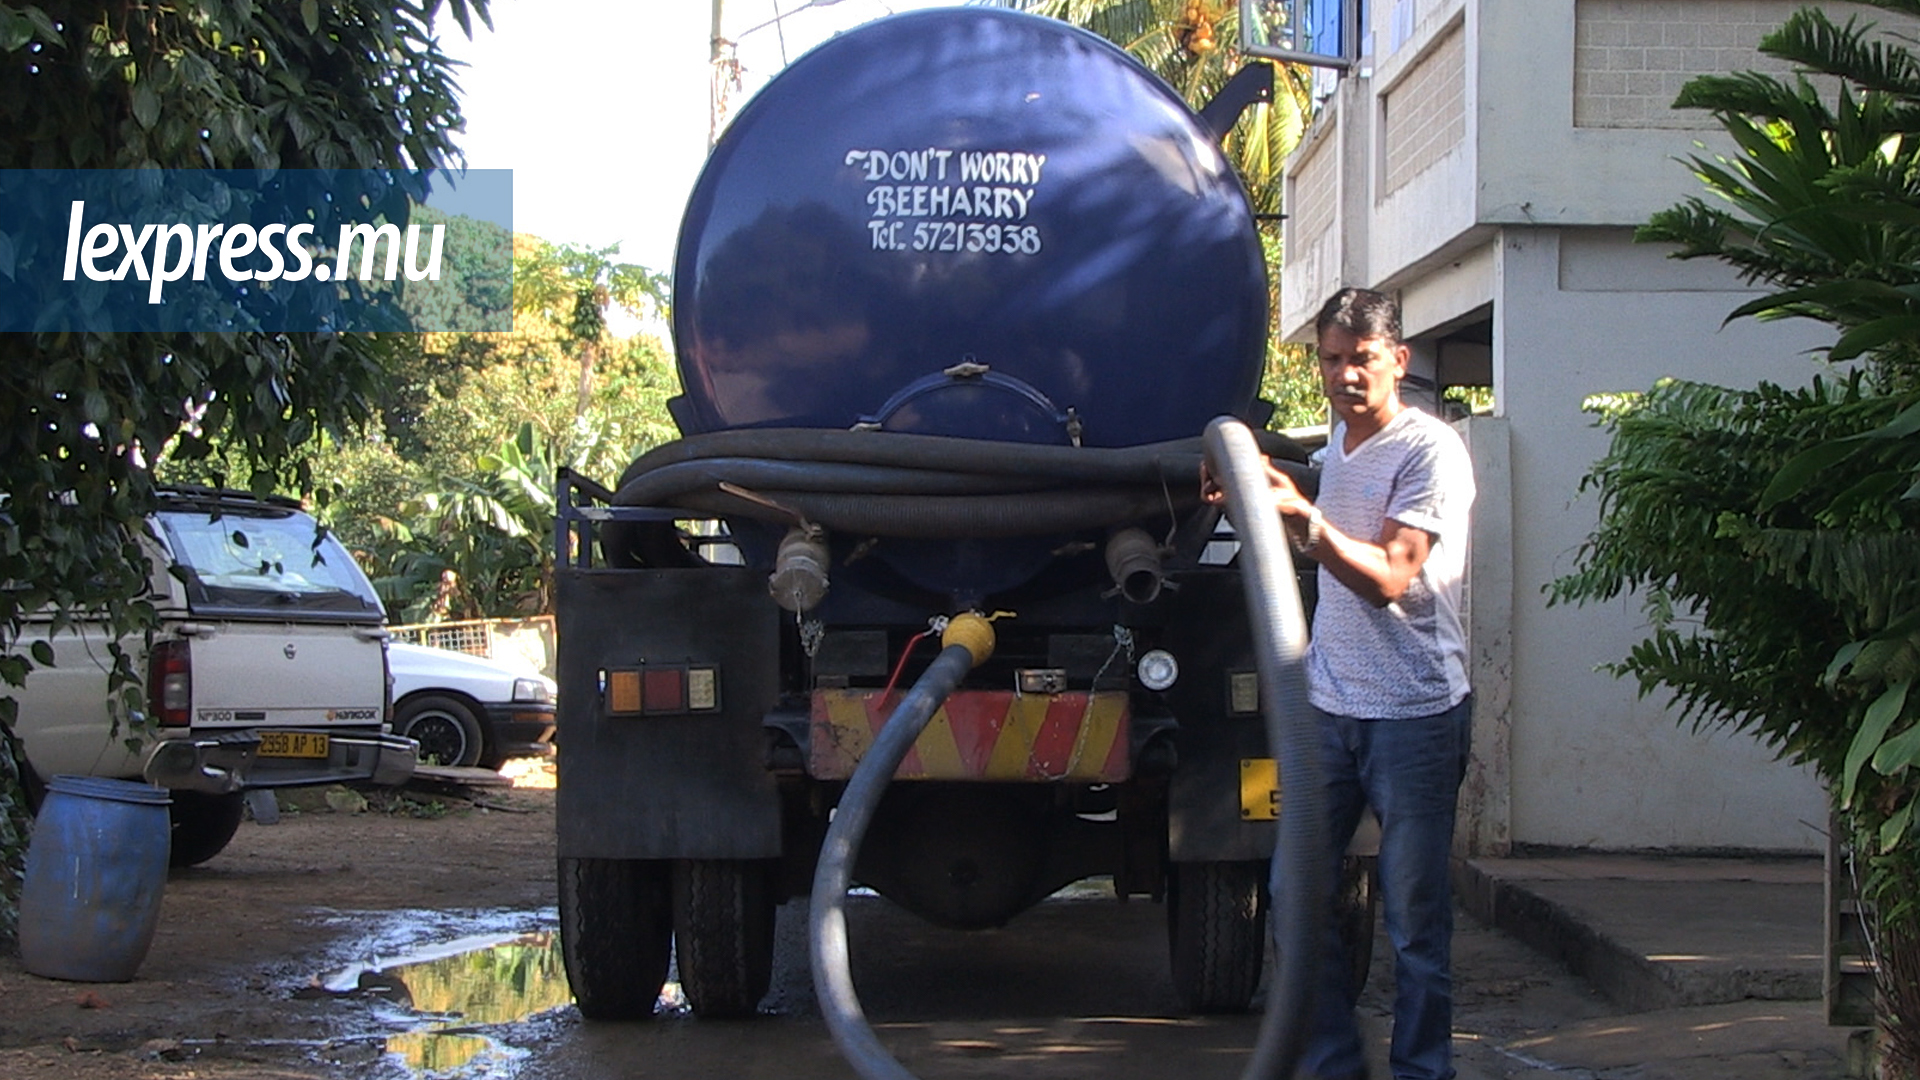 Subhiraj, collecteur d’eaux usées: Don’t worry, Beeharry